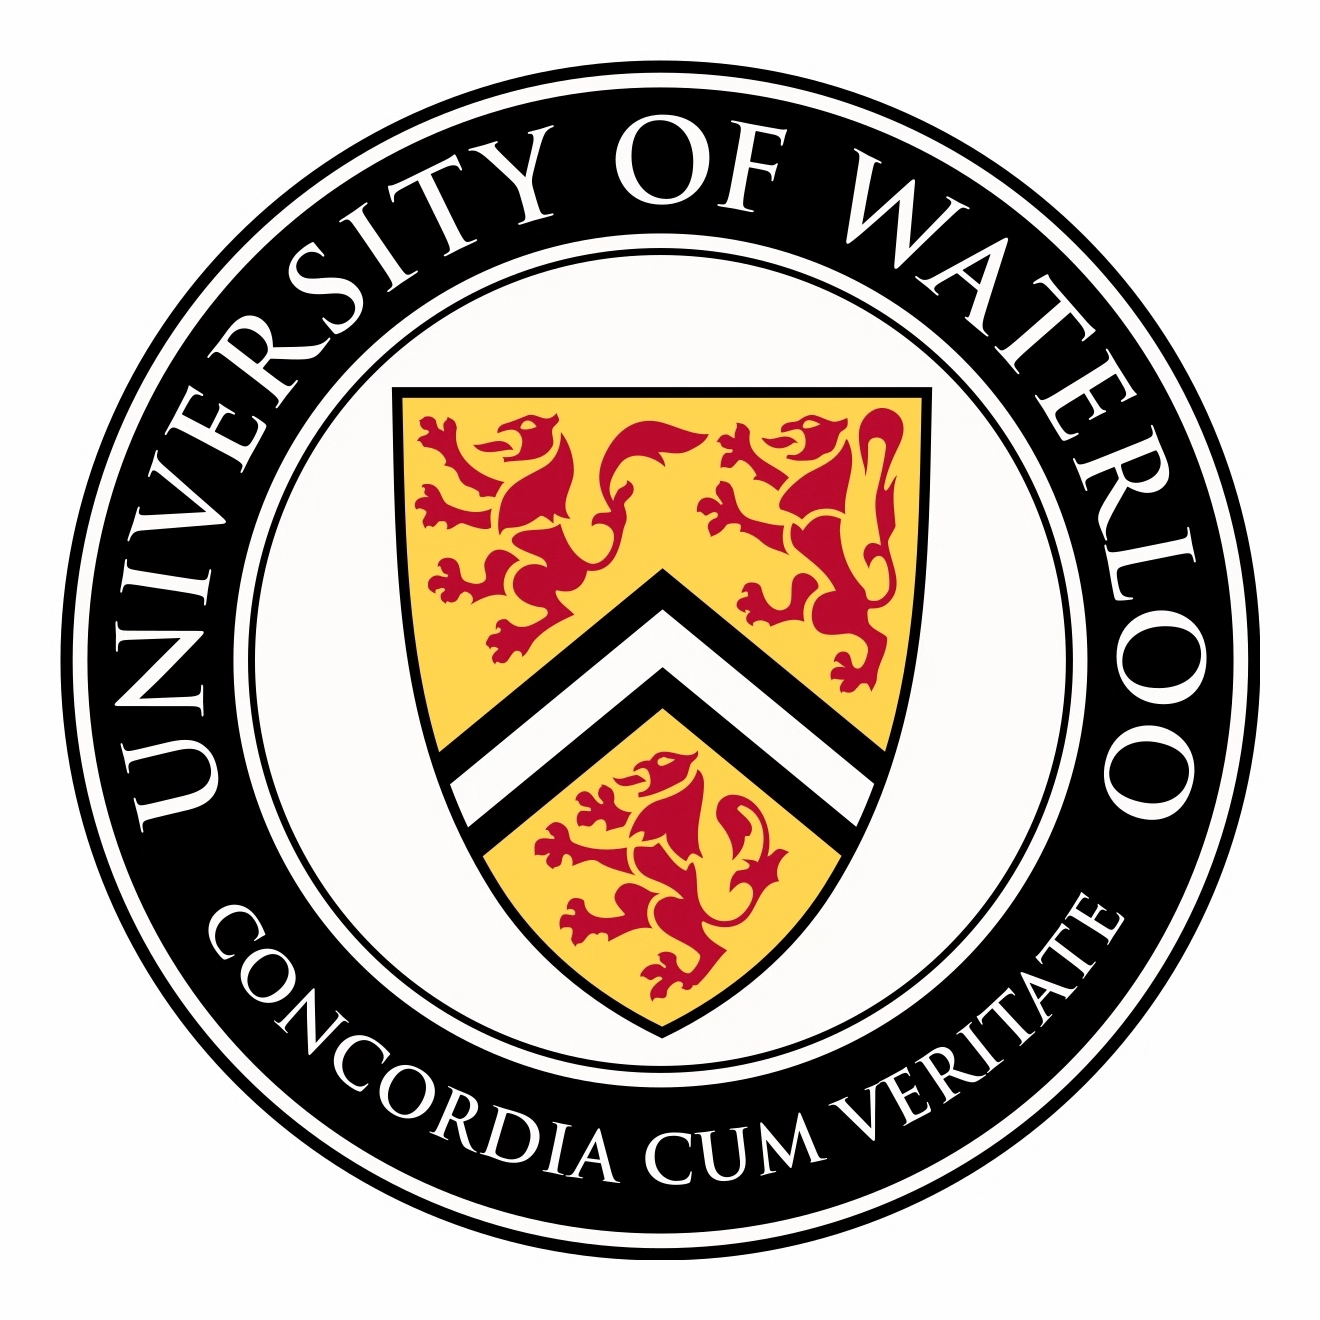 _images/University_of_Waterloo.jpg